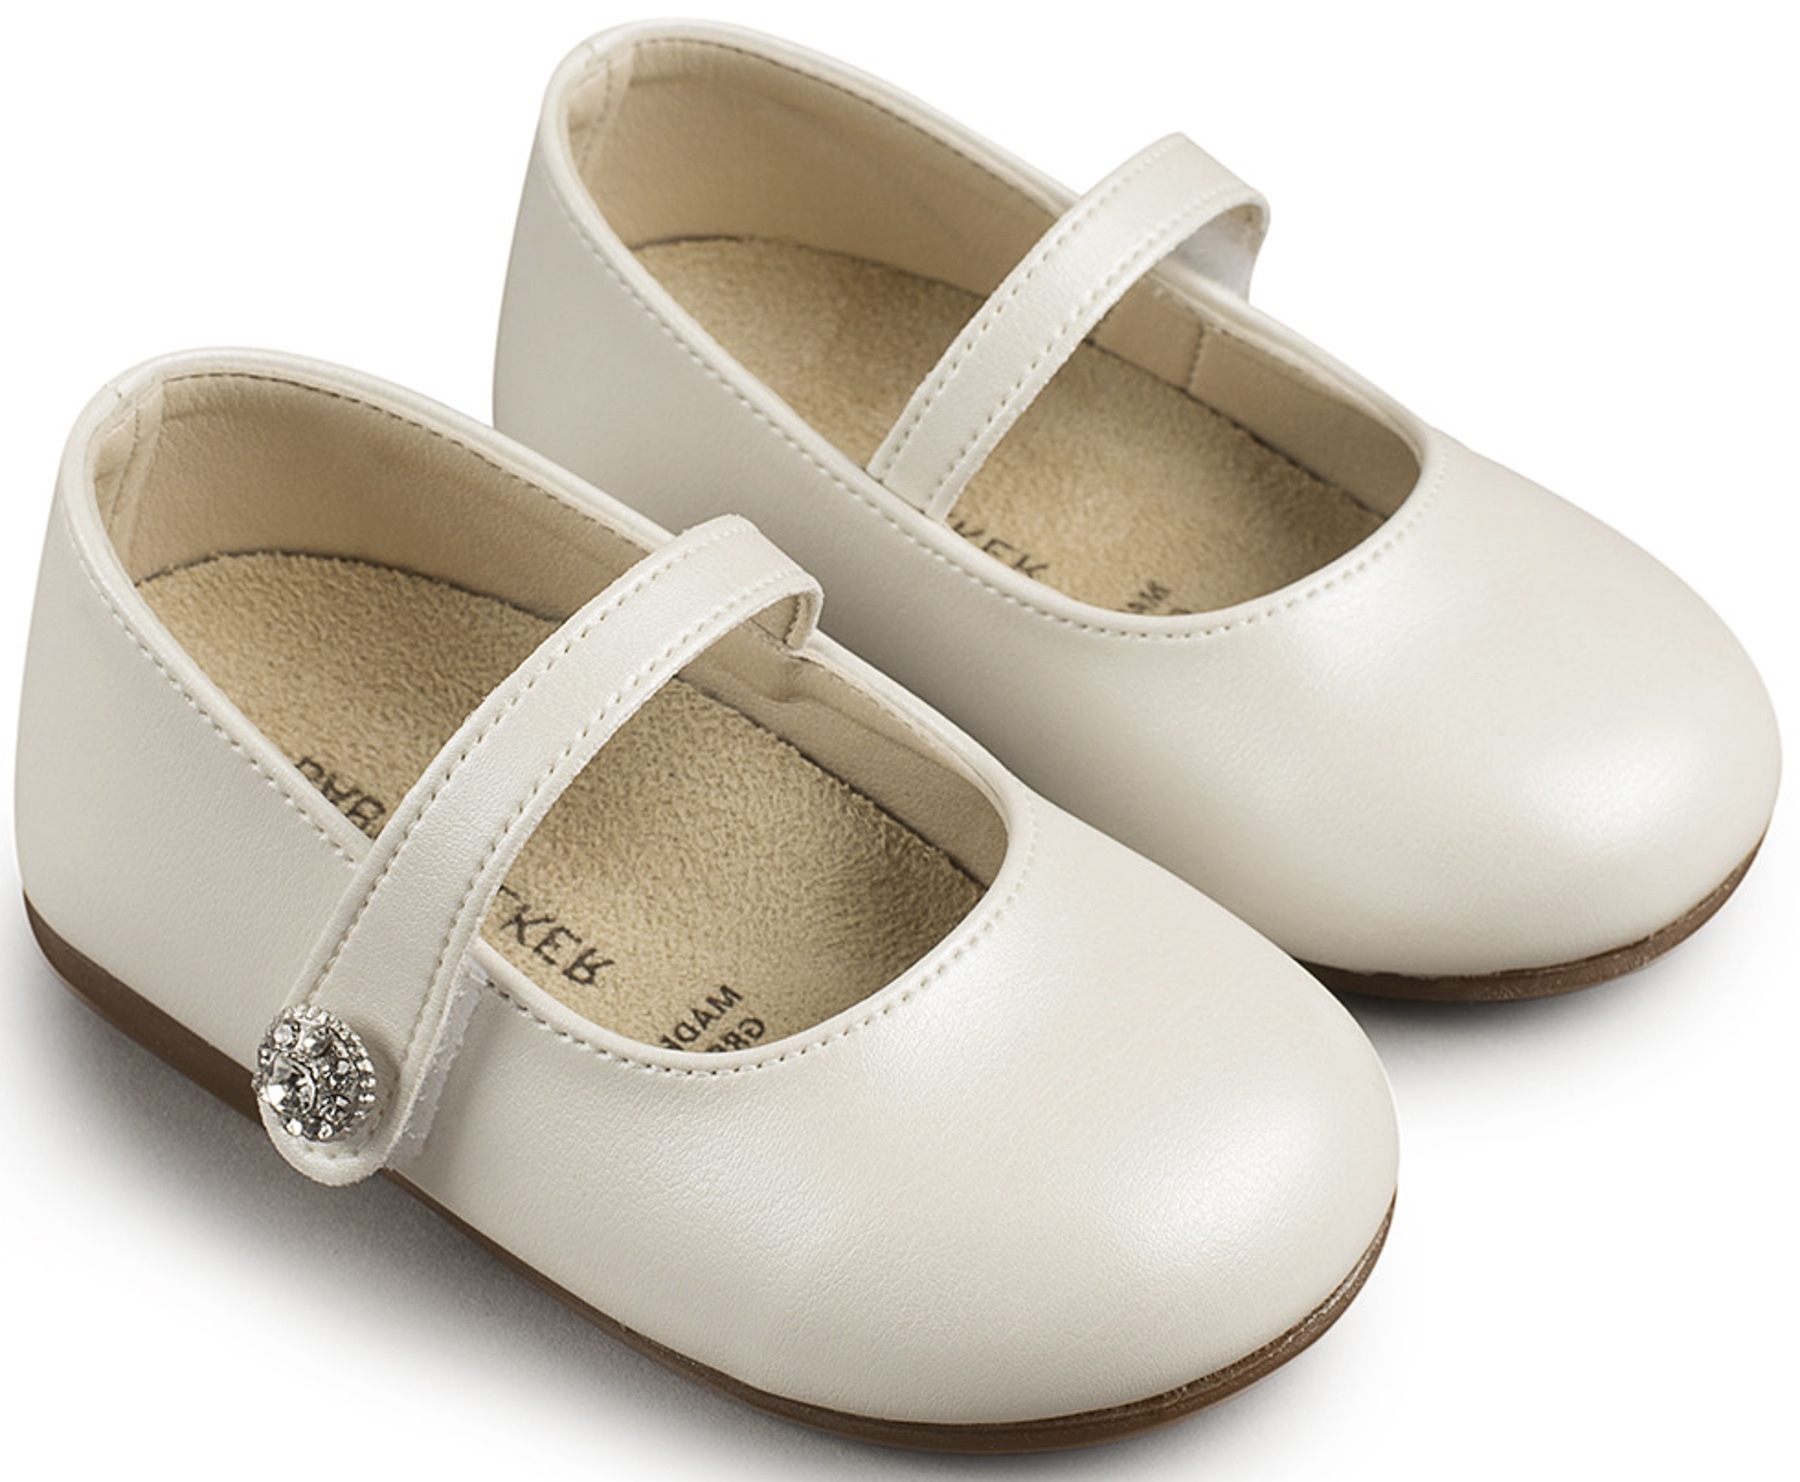 3502 βαπτιστικό παπούτσι για κορίτσι εκρού απλό δερμάτινο περπατήματος : 1